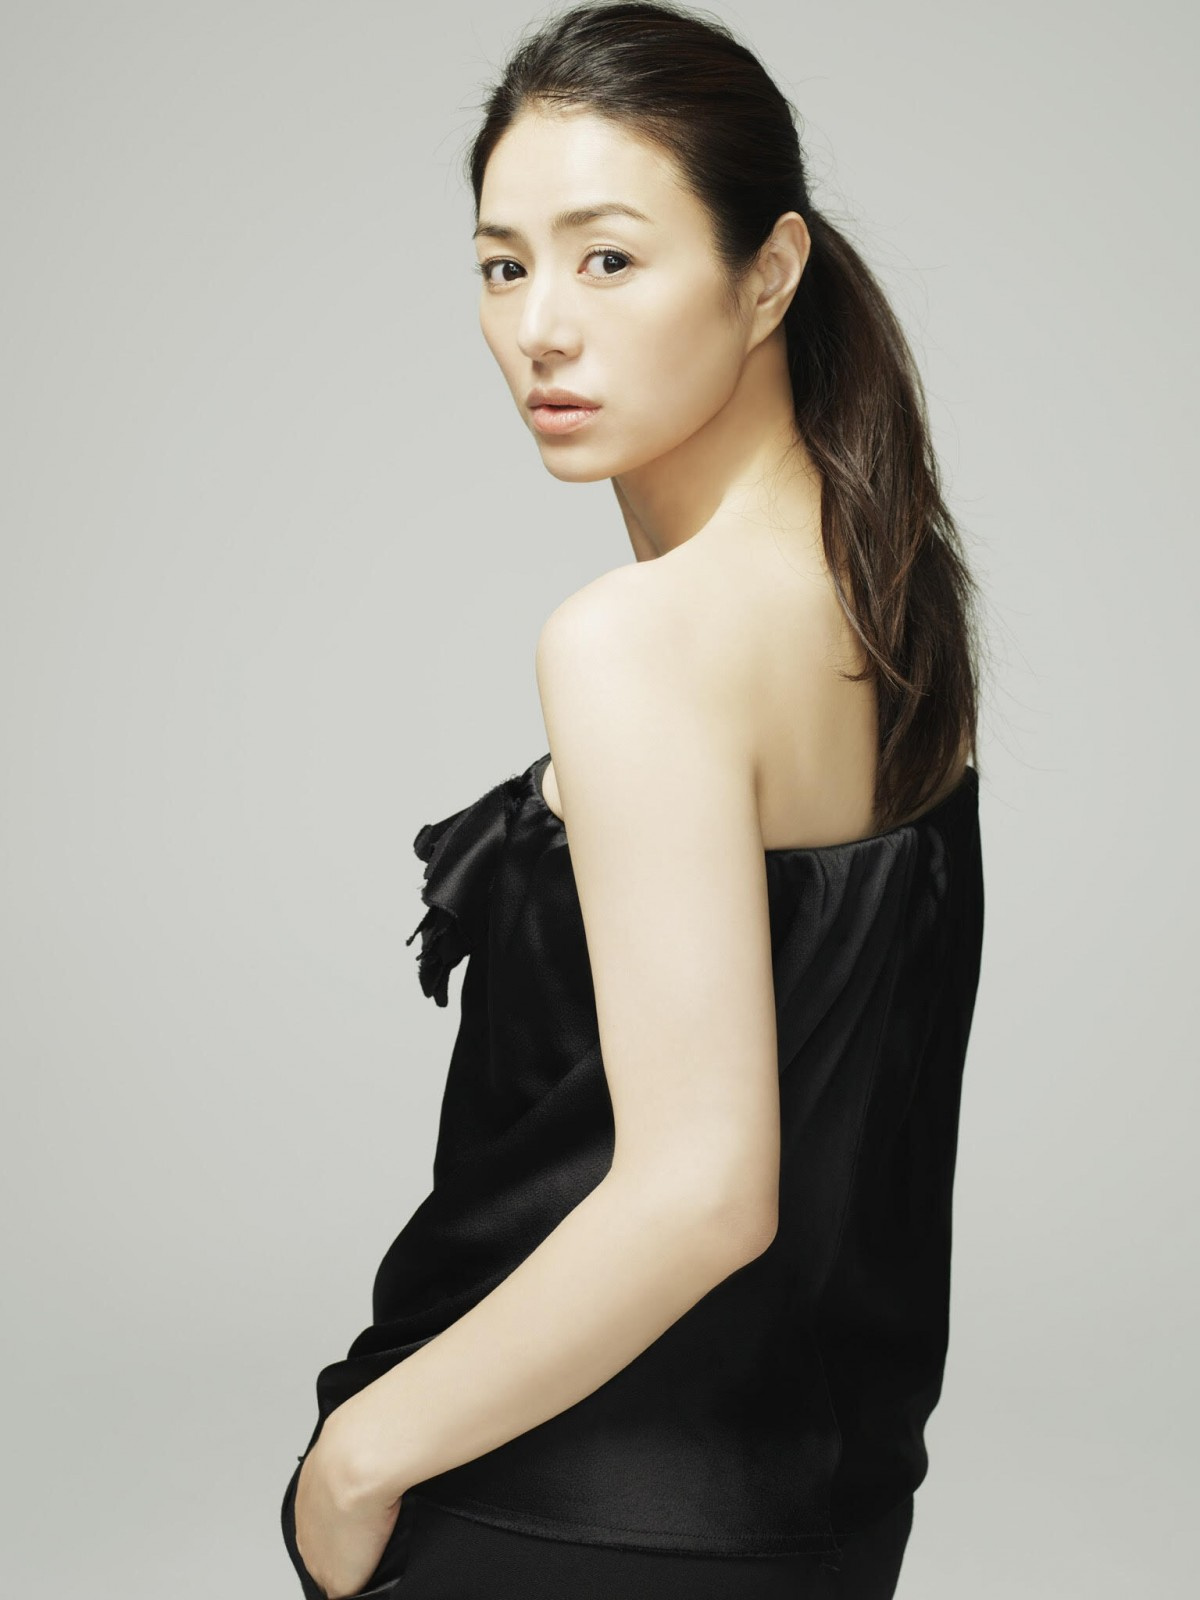 井川遥 2年ぶり ファッション誌の顔 返り咲き 雑誌づくりにずっと関わっていきたい Oricon News